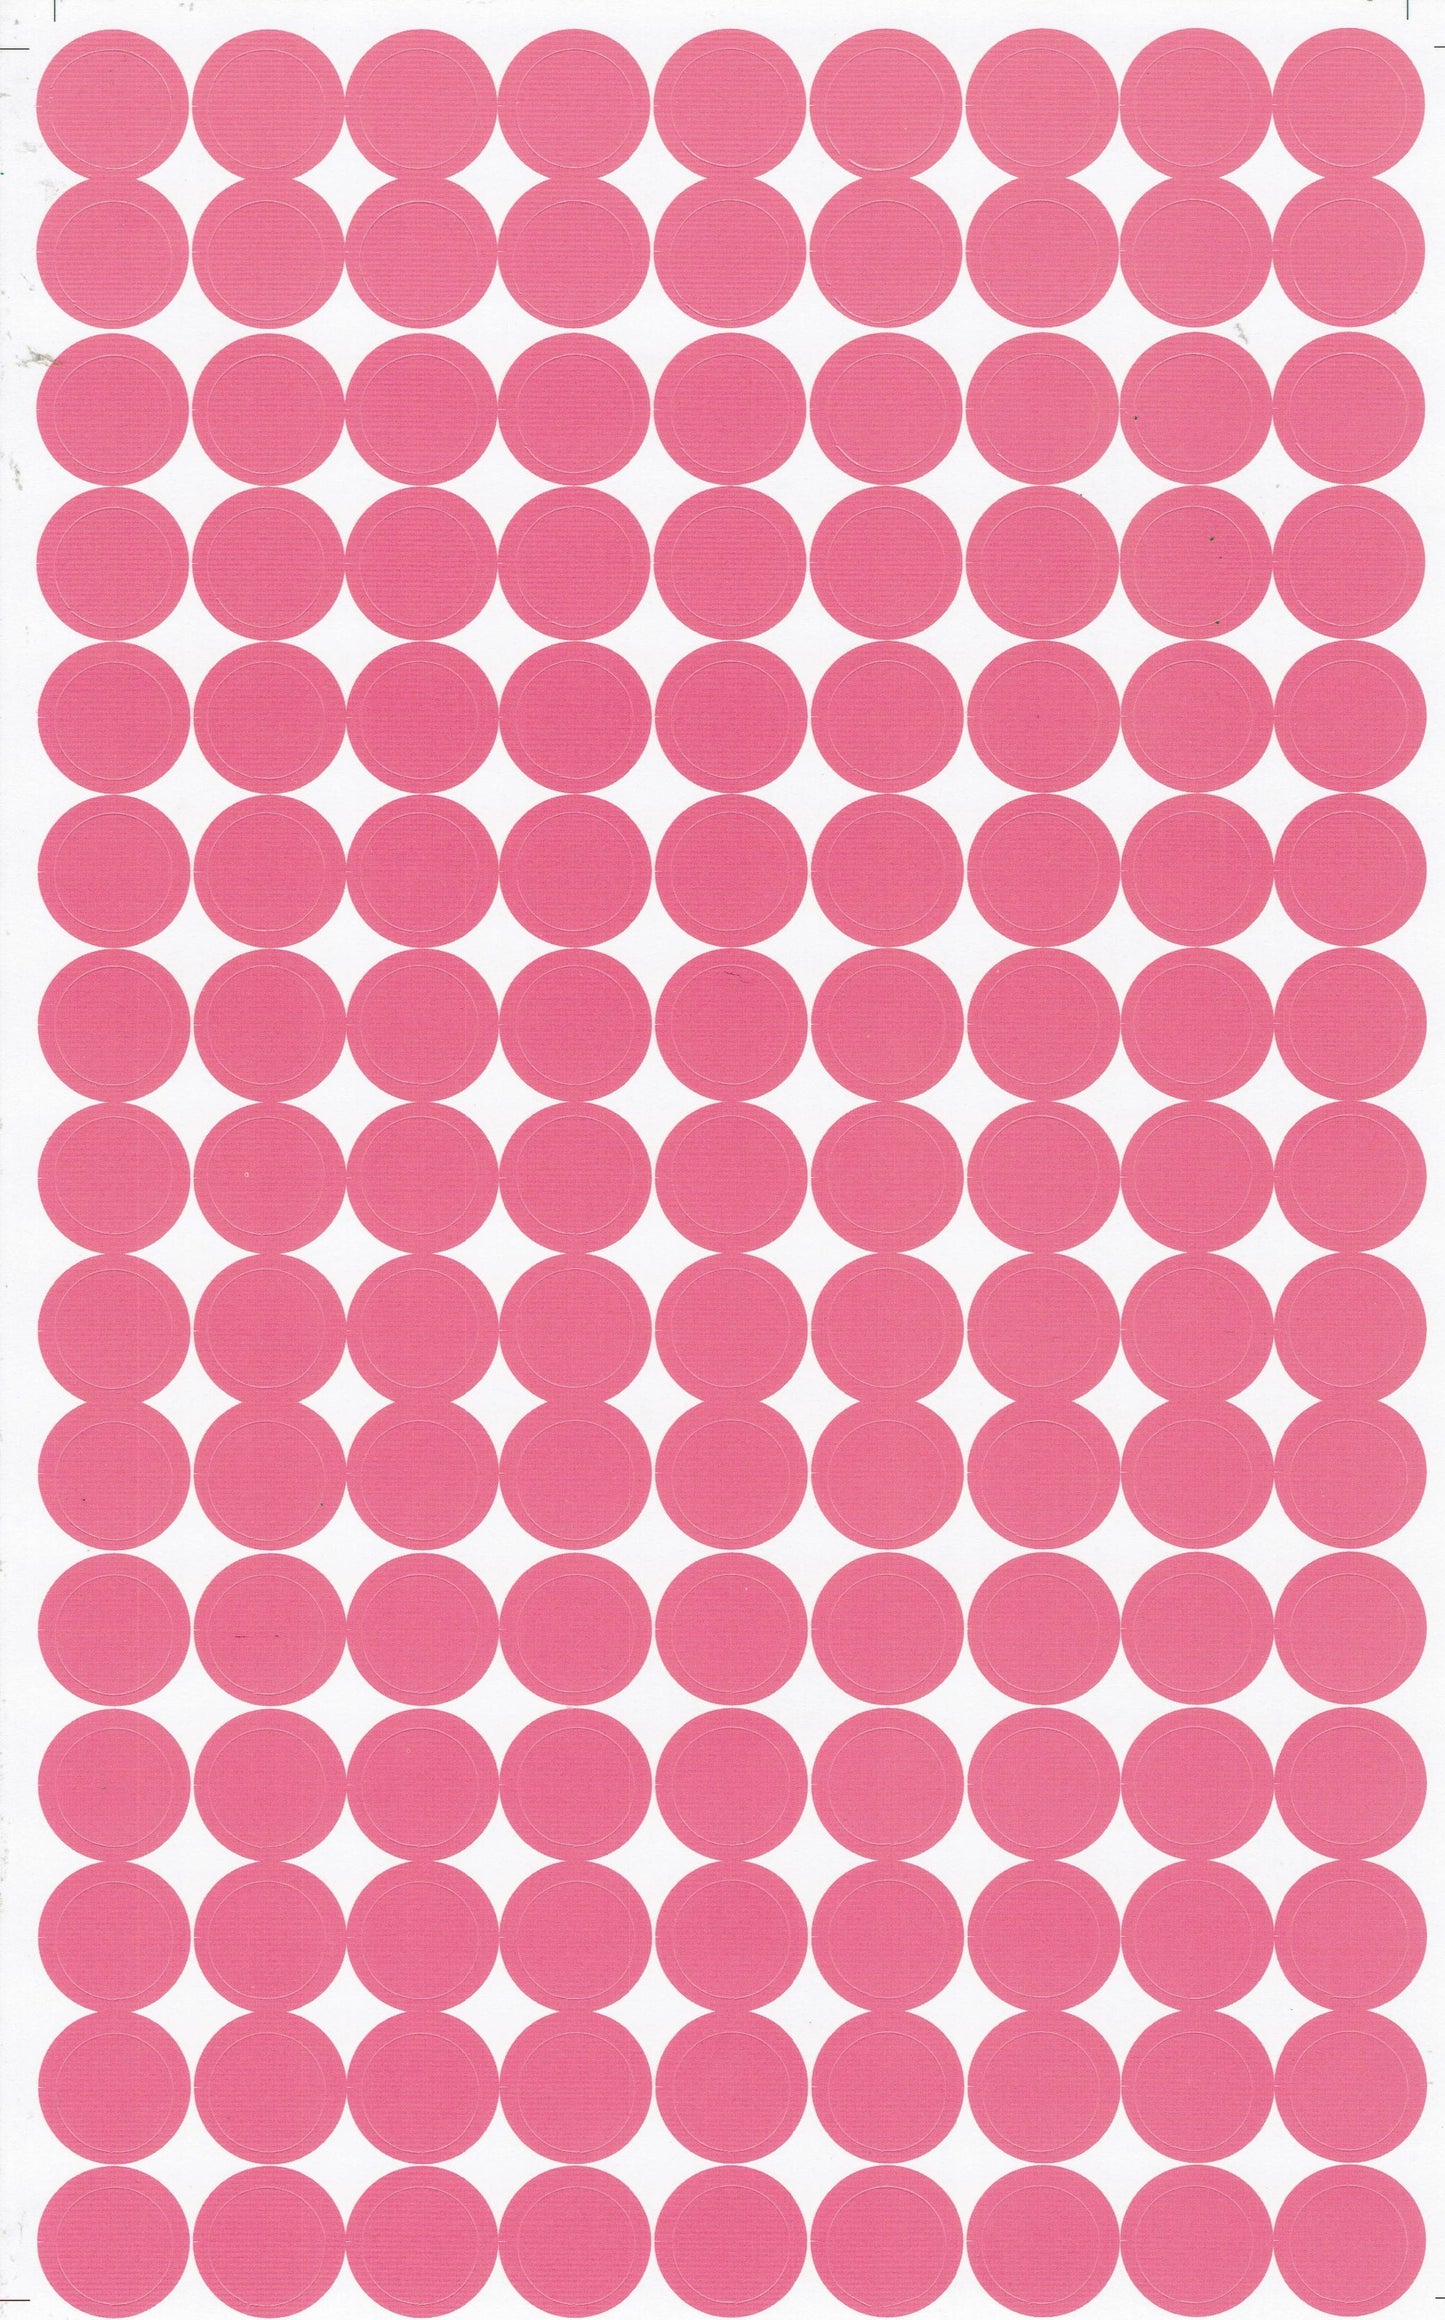 Dots Punkte Kreise Ball rund pinkAufkleber Sticker für Kinder Basteln Kindergarten Schule 1 Bogen 515